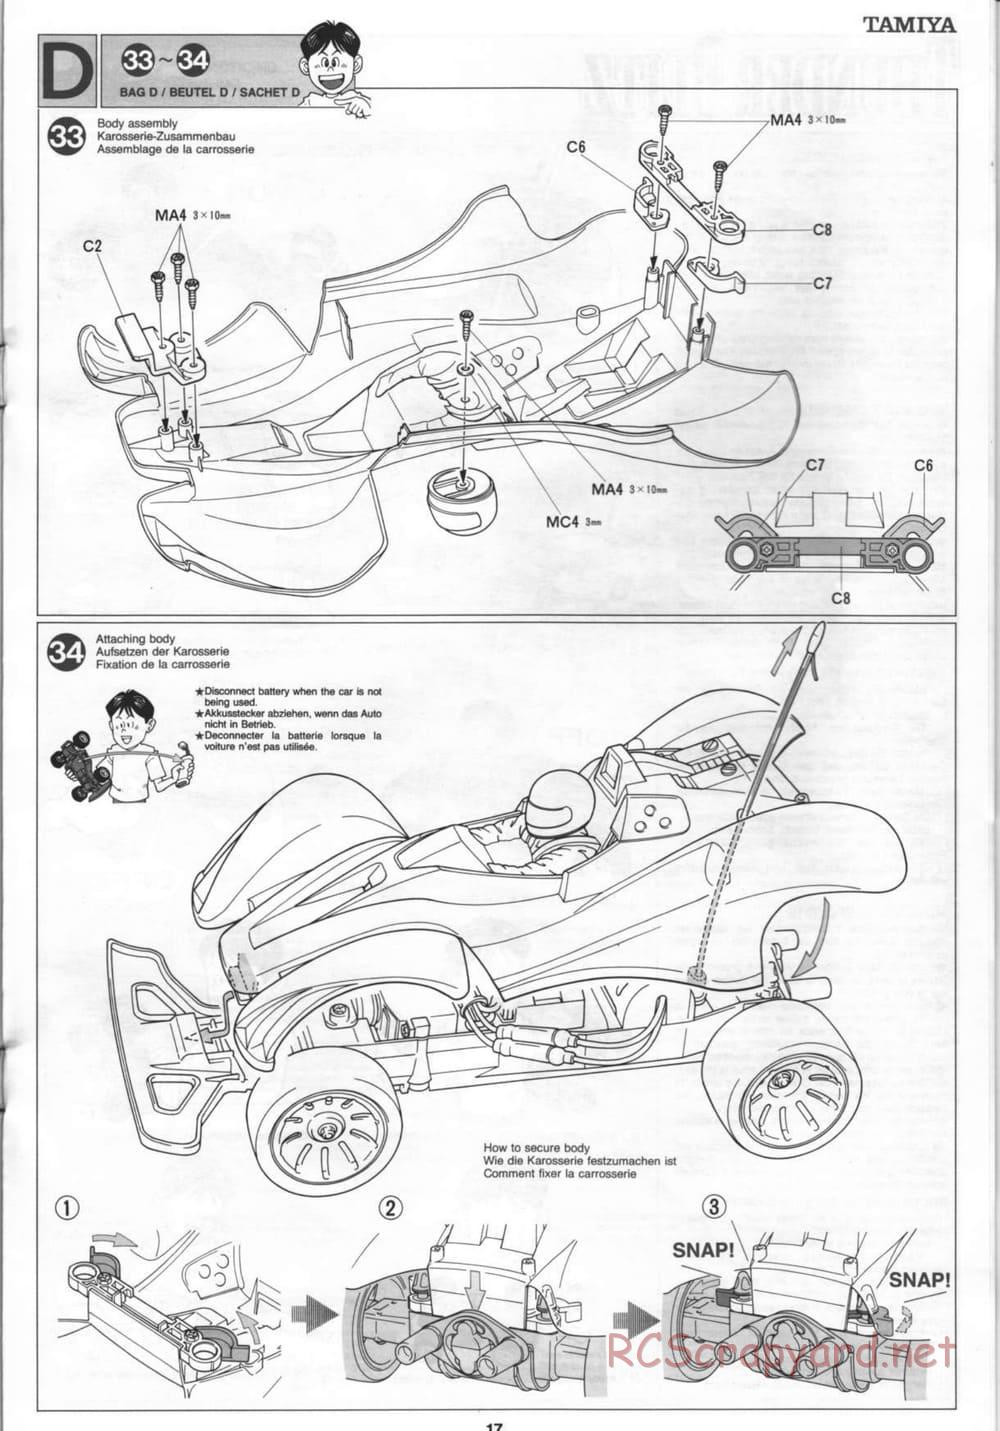 Tamiya - Thunder Blitz - Boy's 4WD Chassis - Manual - Page 17